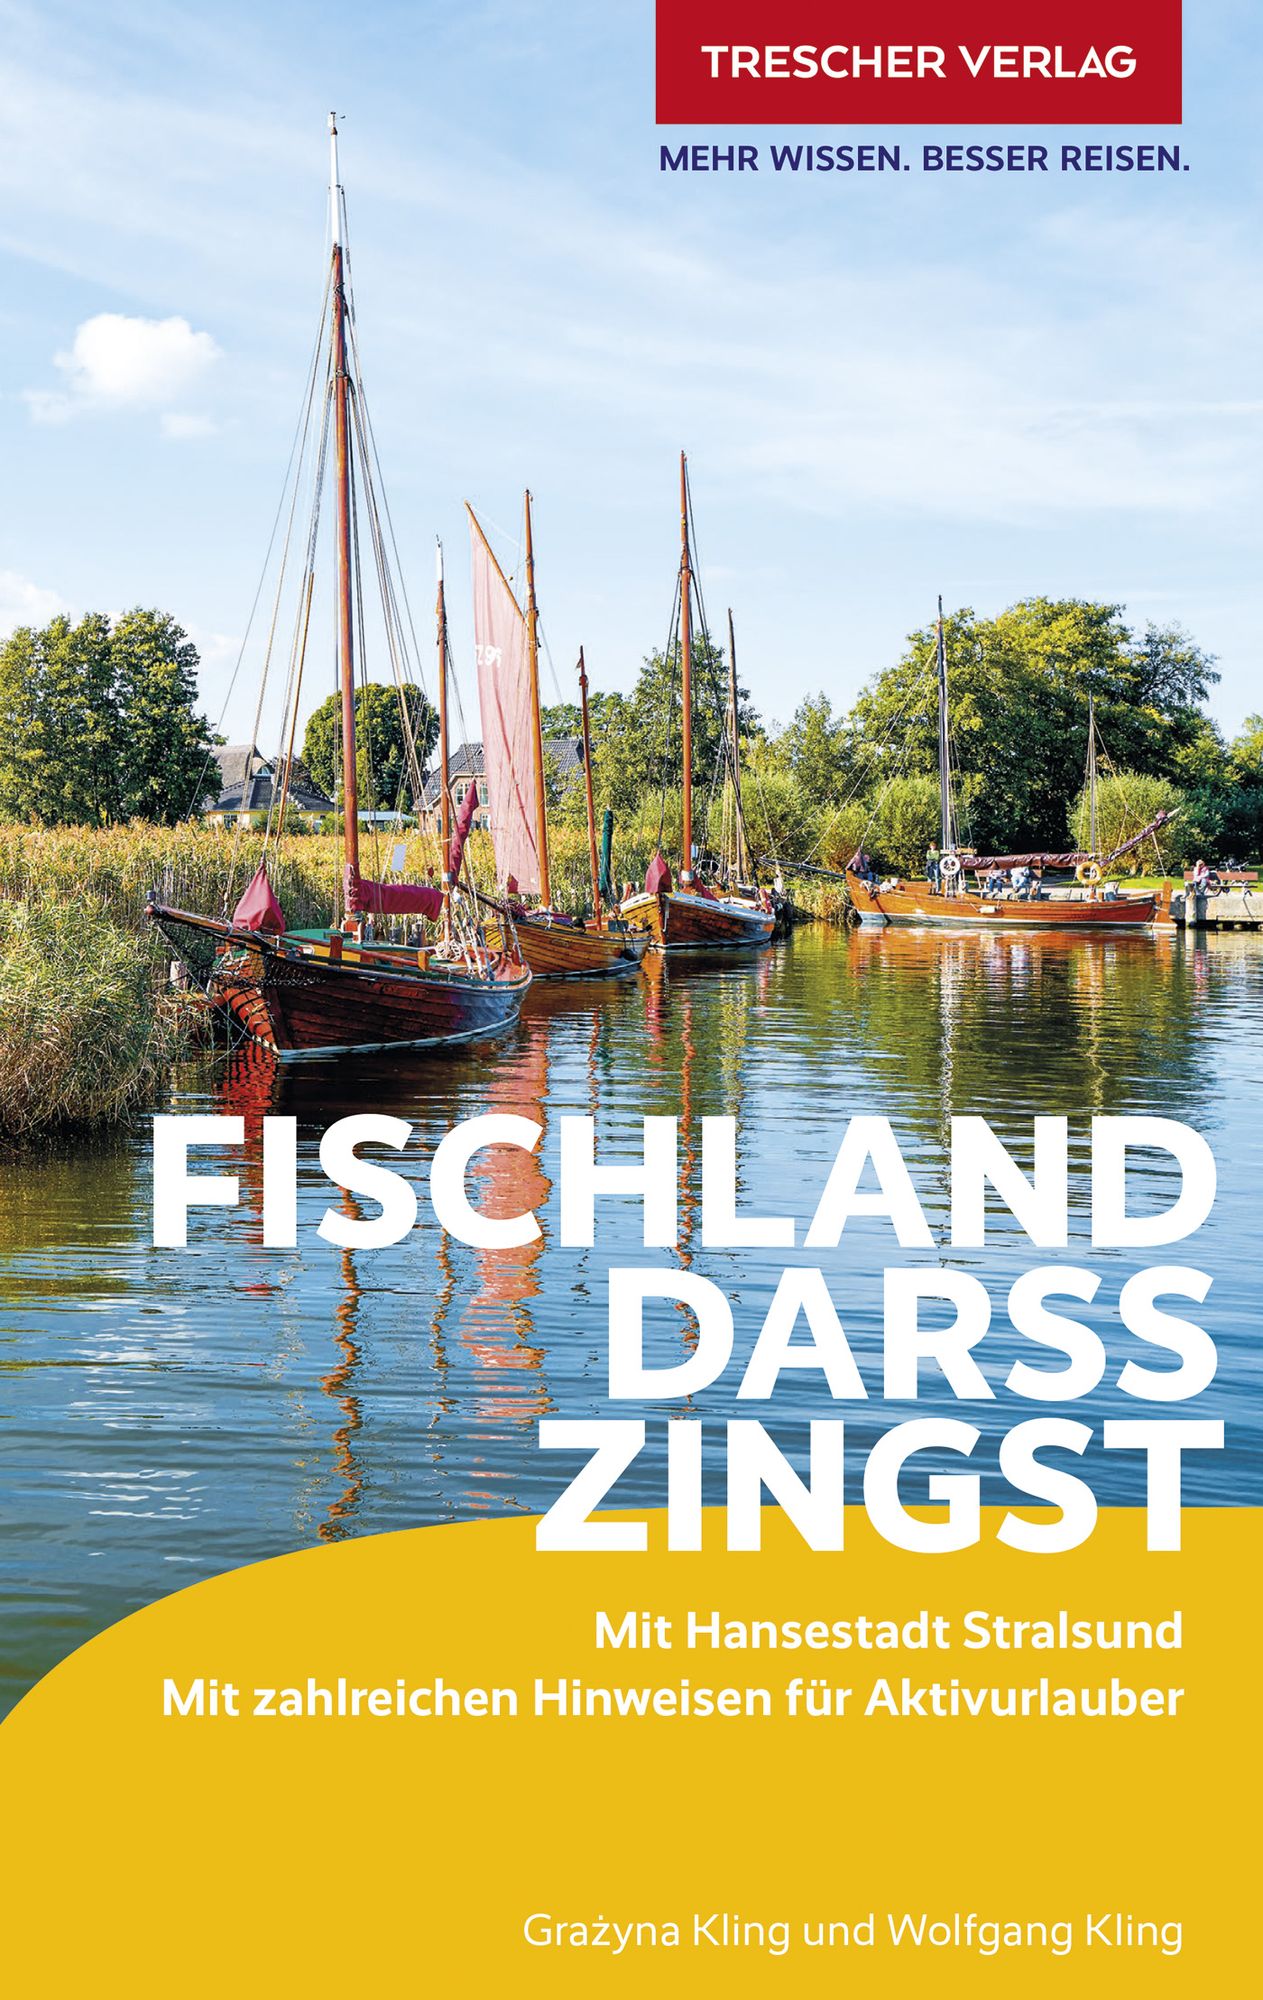 TRESCHER Reiseführer Fischland, Darß, Zingst von Wolfgang Kling - Buch Foto Bild